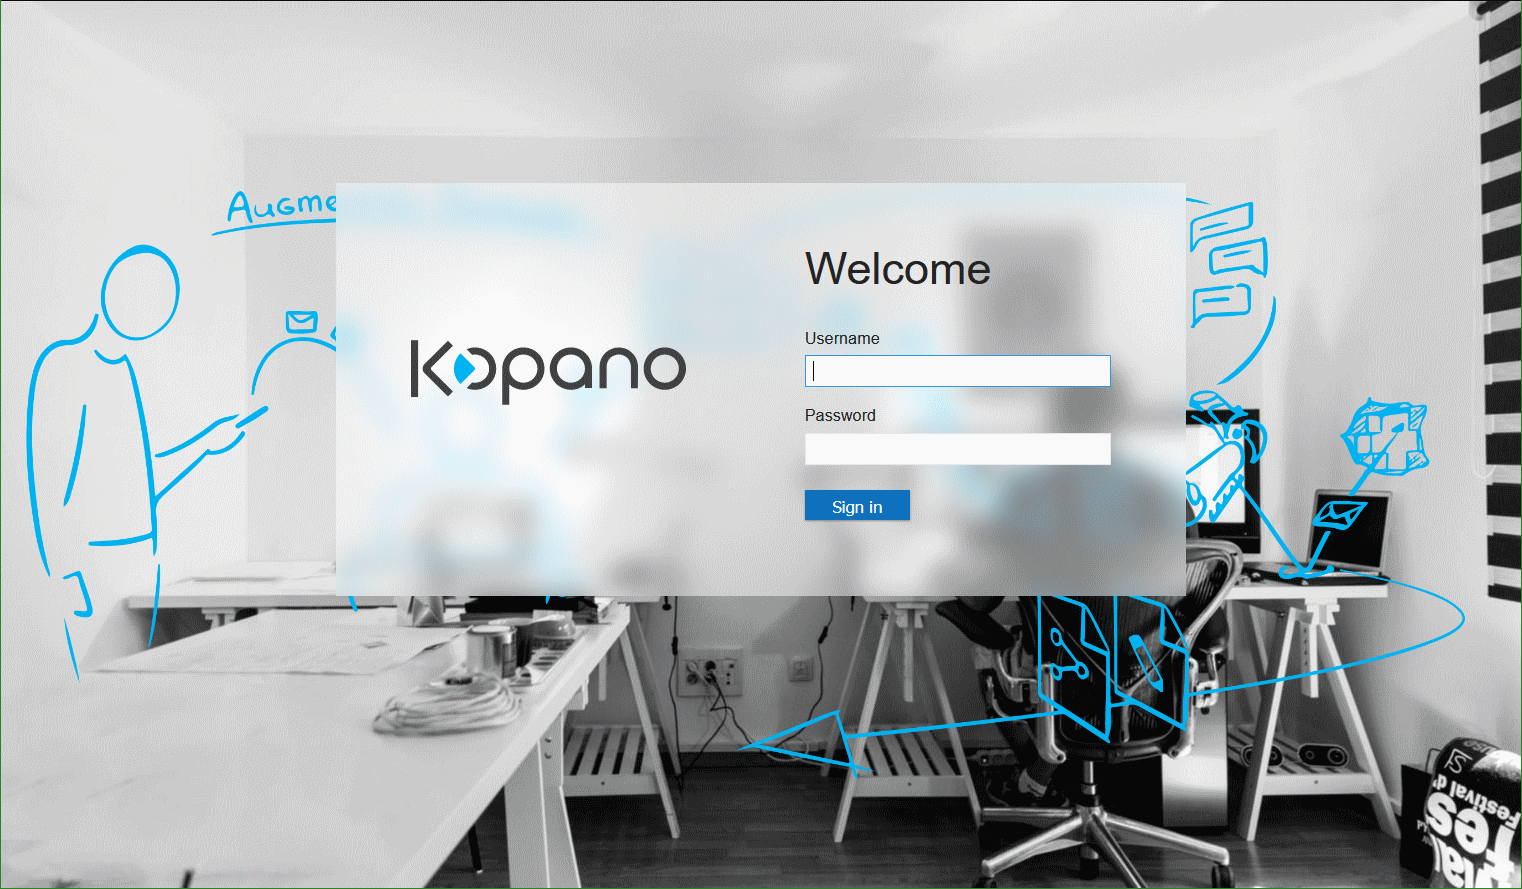 Kopano WebApp login page